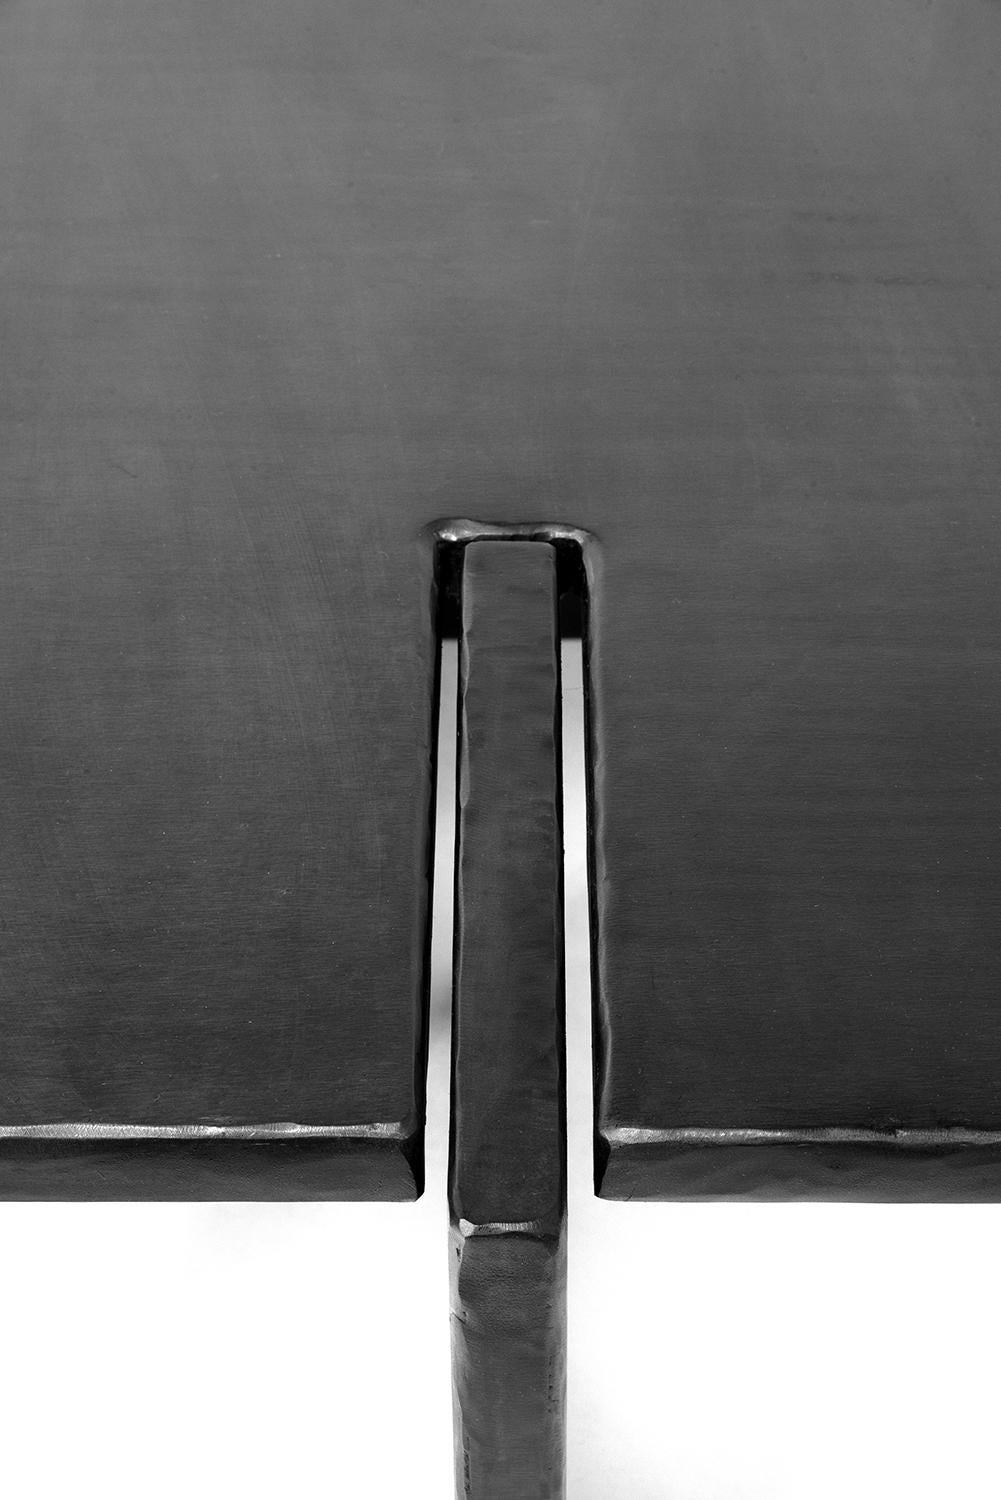 Tableau n° 5 - Café
A&M. Szymanski
d. 2023

Cette table basse est composée de plans austères et perpendiculaires qui ont été entaillés et assemblés avec précision. Ses bords bruts sculptés à la main contrastent magnifiquement avec les surfaces